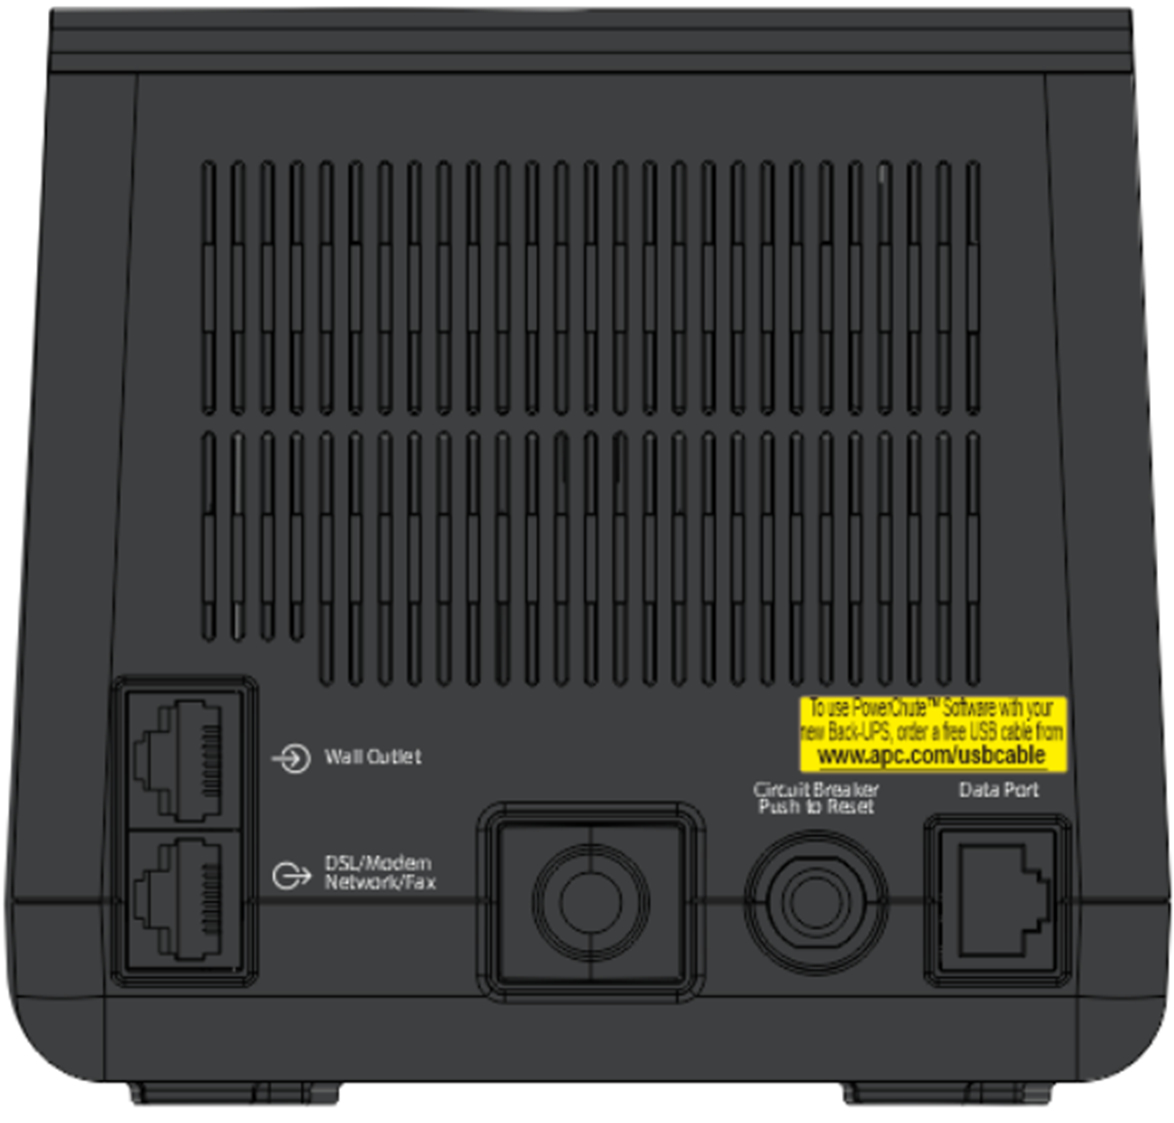 APC Back-UPS 850VA, 230V, USB Type-C and A